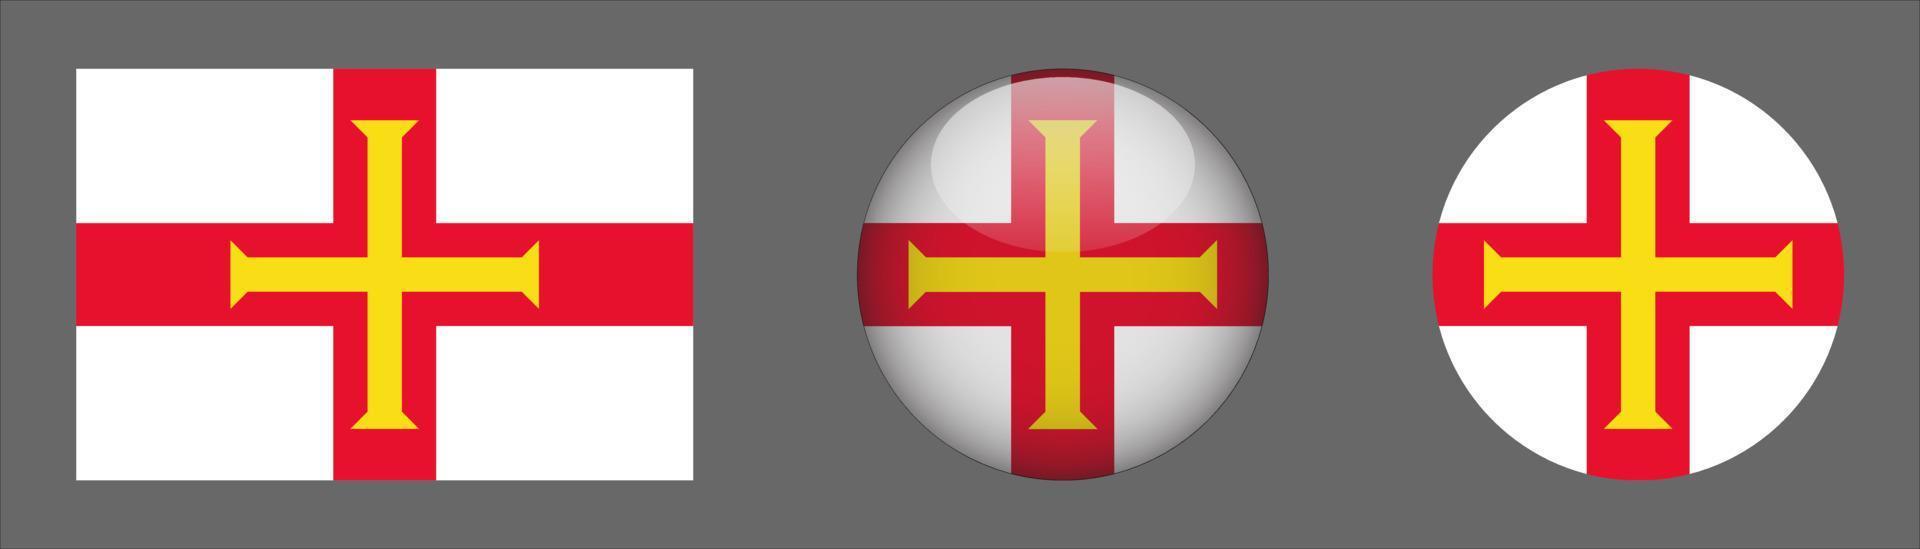 Colección de conjunto de bandera de guernsey, relación de tamaño original, redondeado 3d y redondeado plano vector